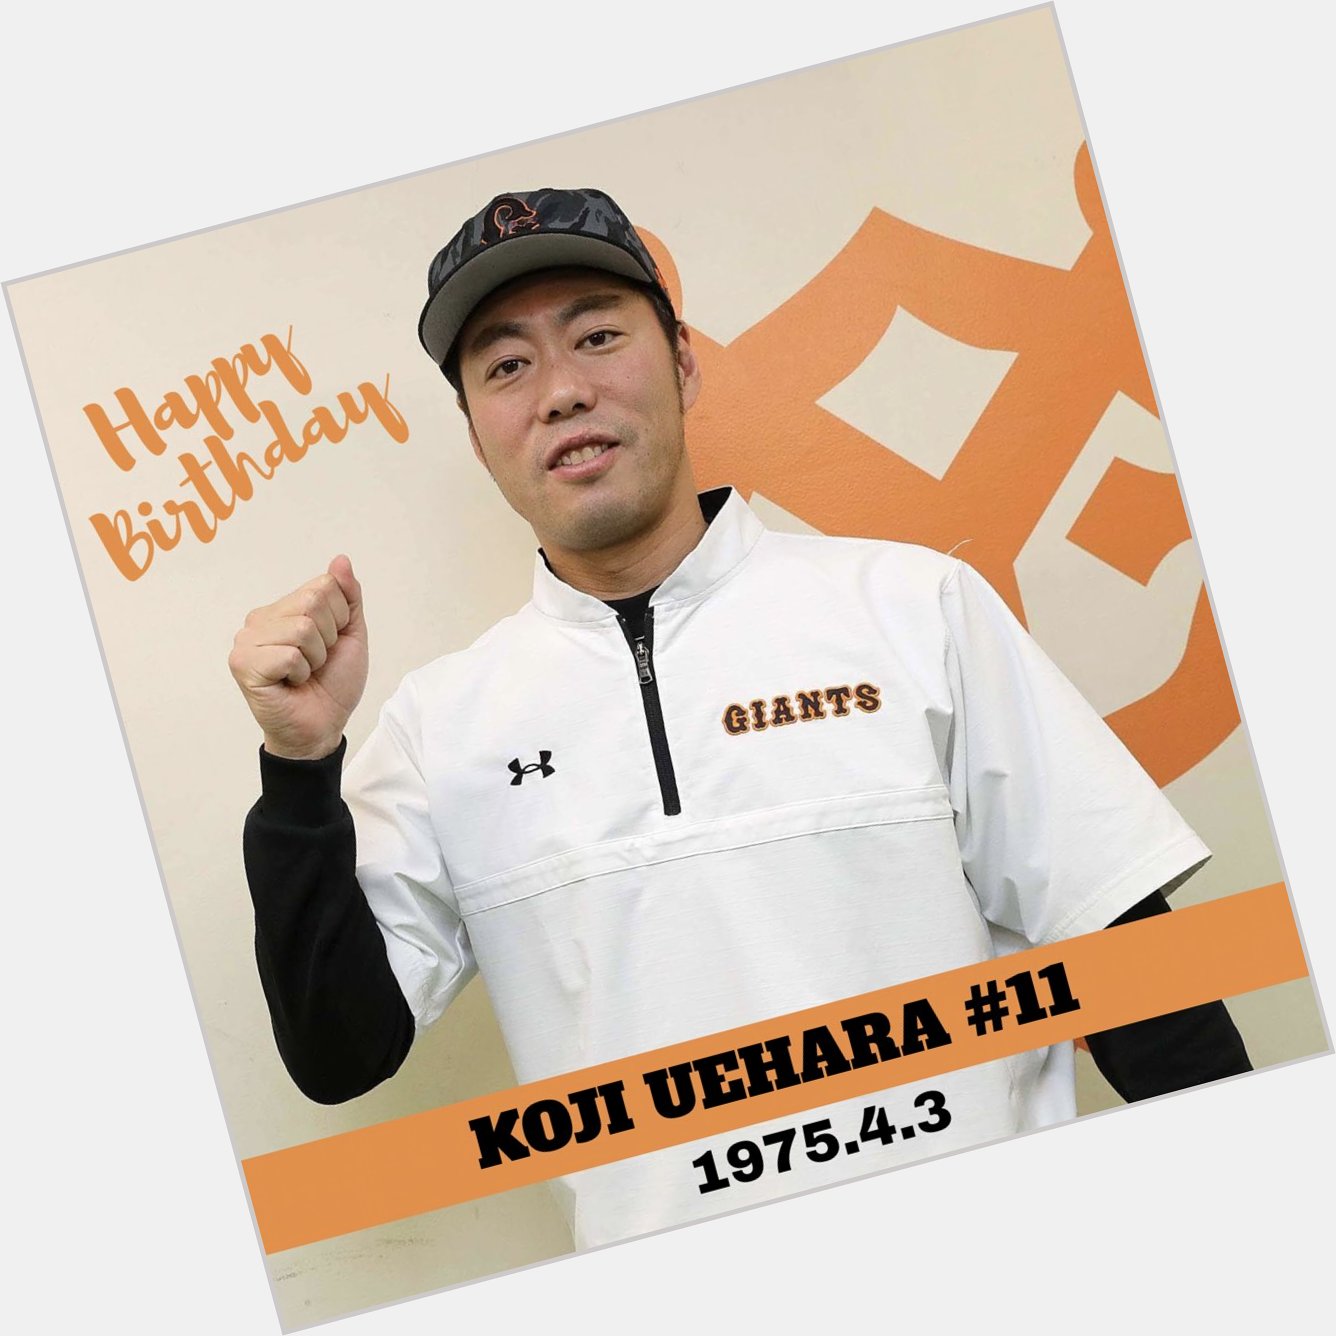                         Happy birthday, Koji Uehara     